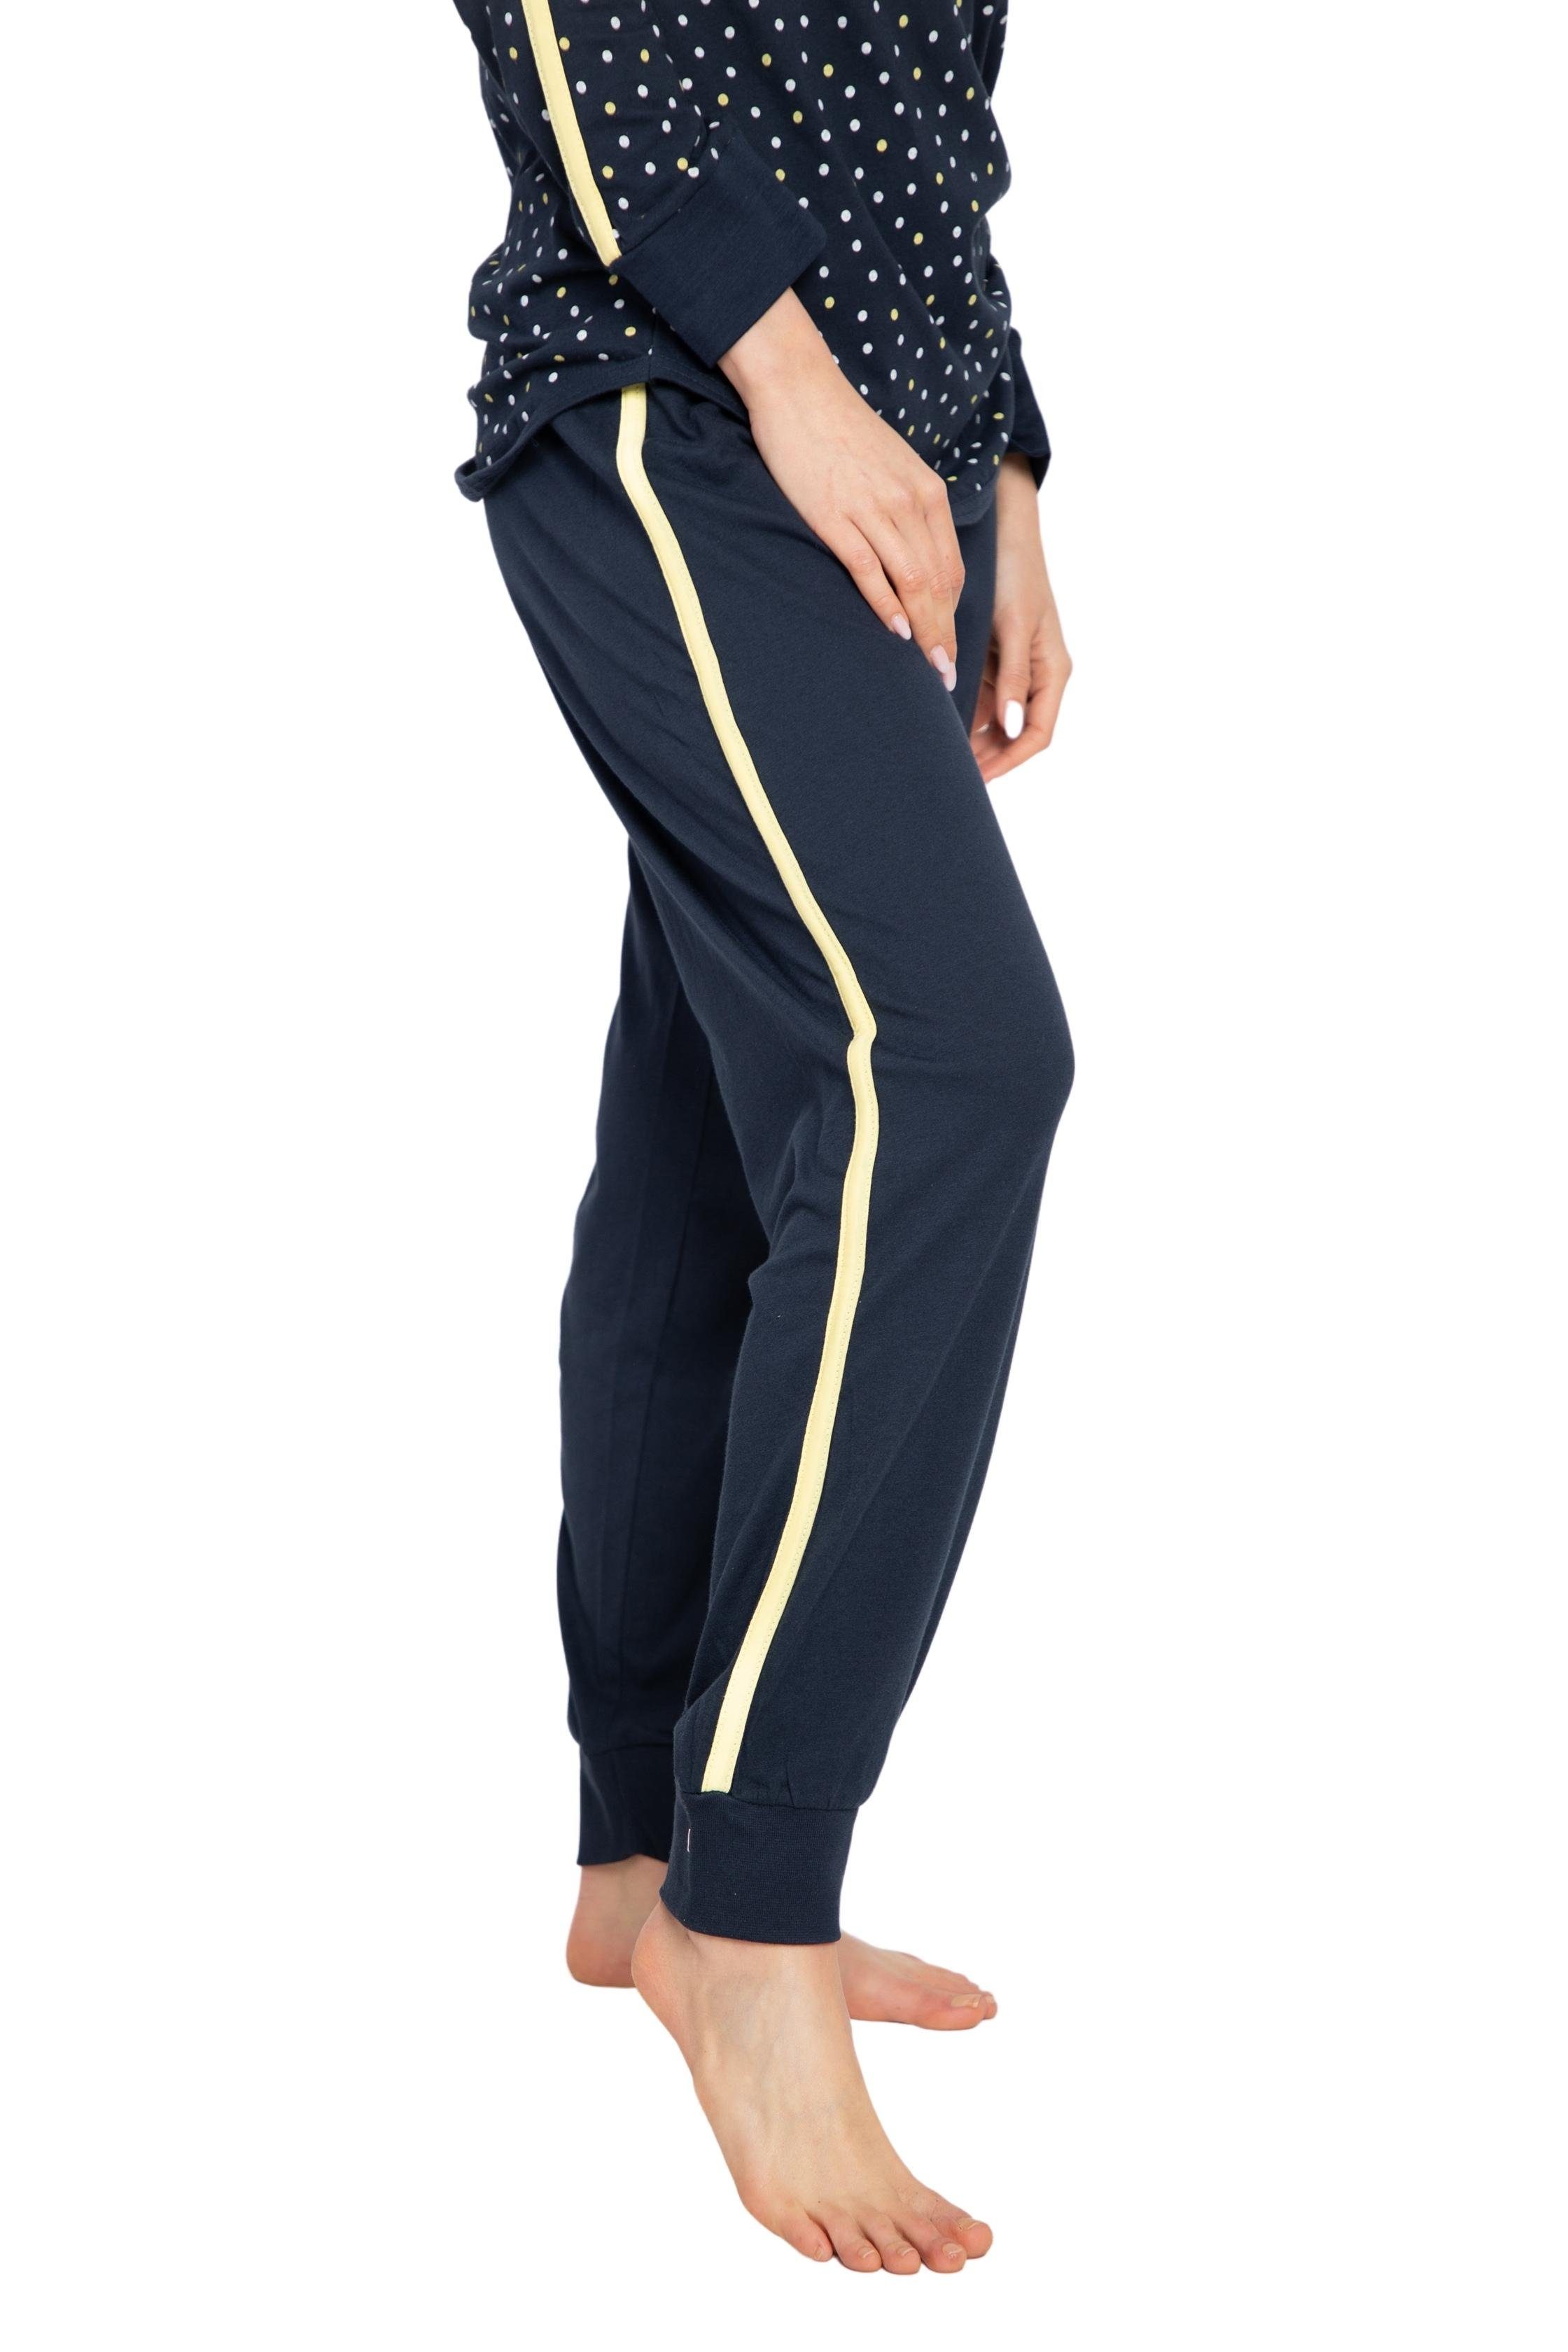 DW727 reiner blau-gelb Baumwolle-Jersey Pyjama Consult-Tex (Packung) Aus Qualität